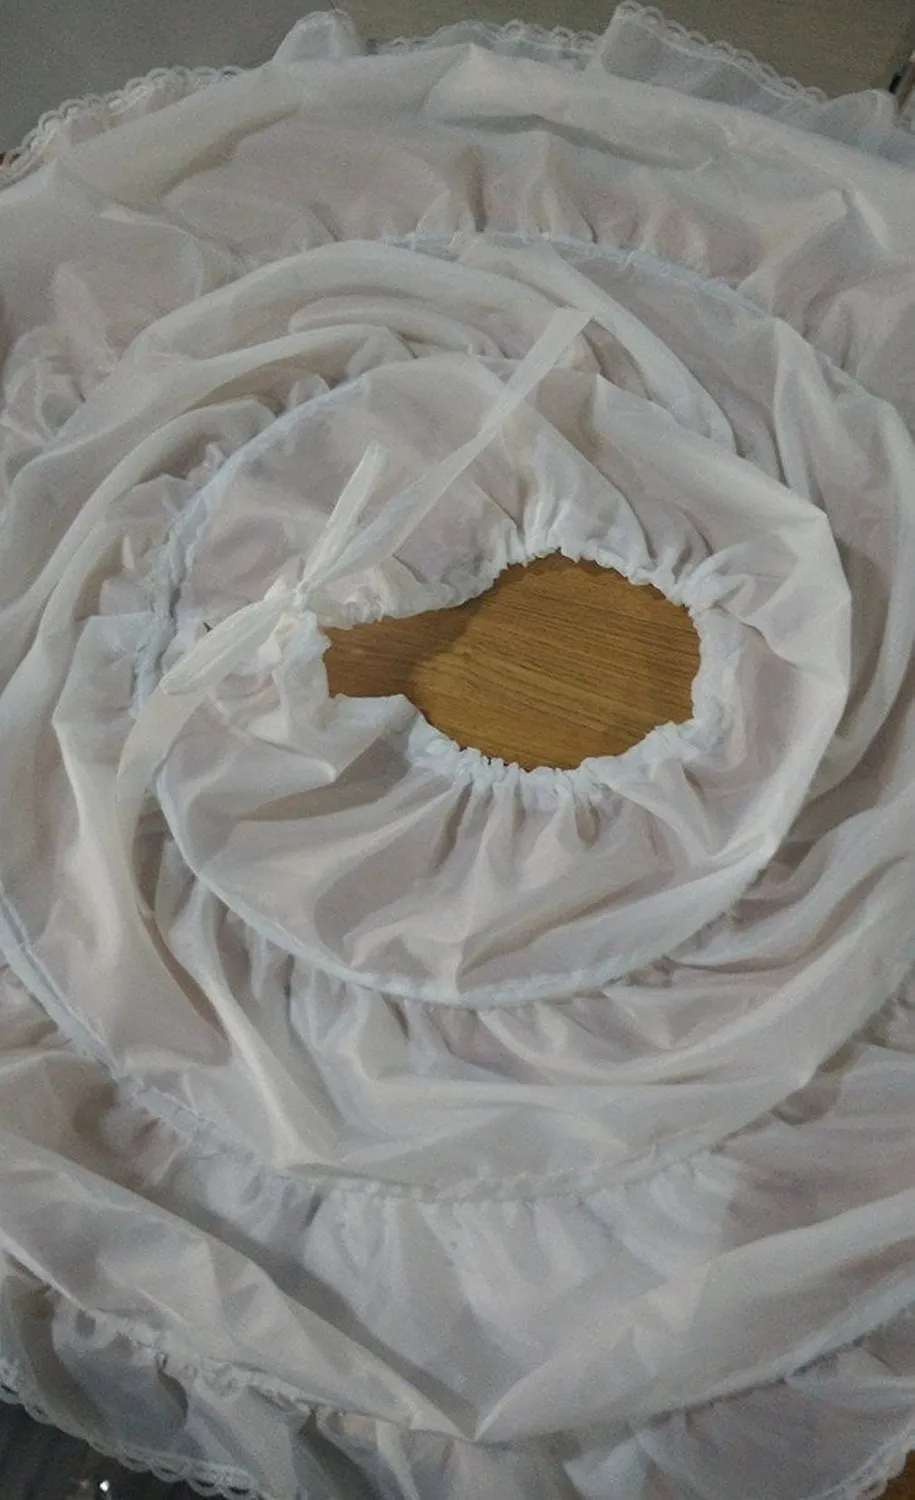 2019 New Arrival Aline 3 Rings Petticoat High Quality Decderskirt for Wedding Children Half SlipsフラワーガールズドレスプリンセスPE1144075